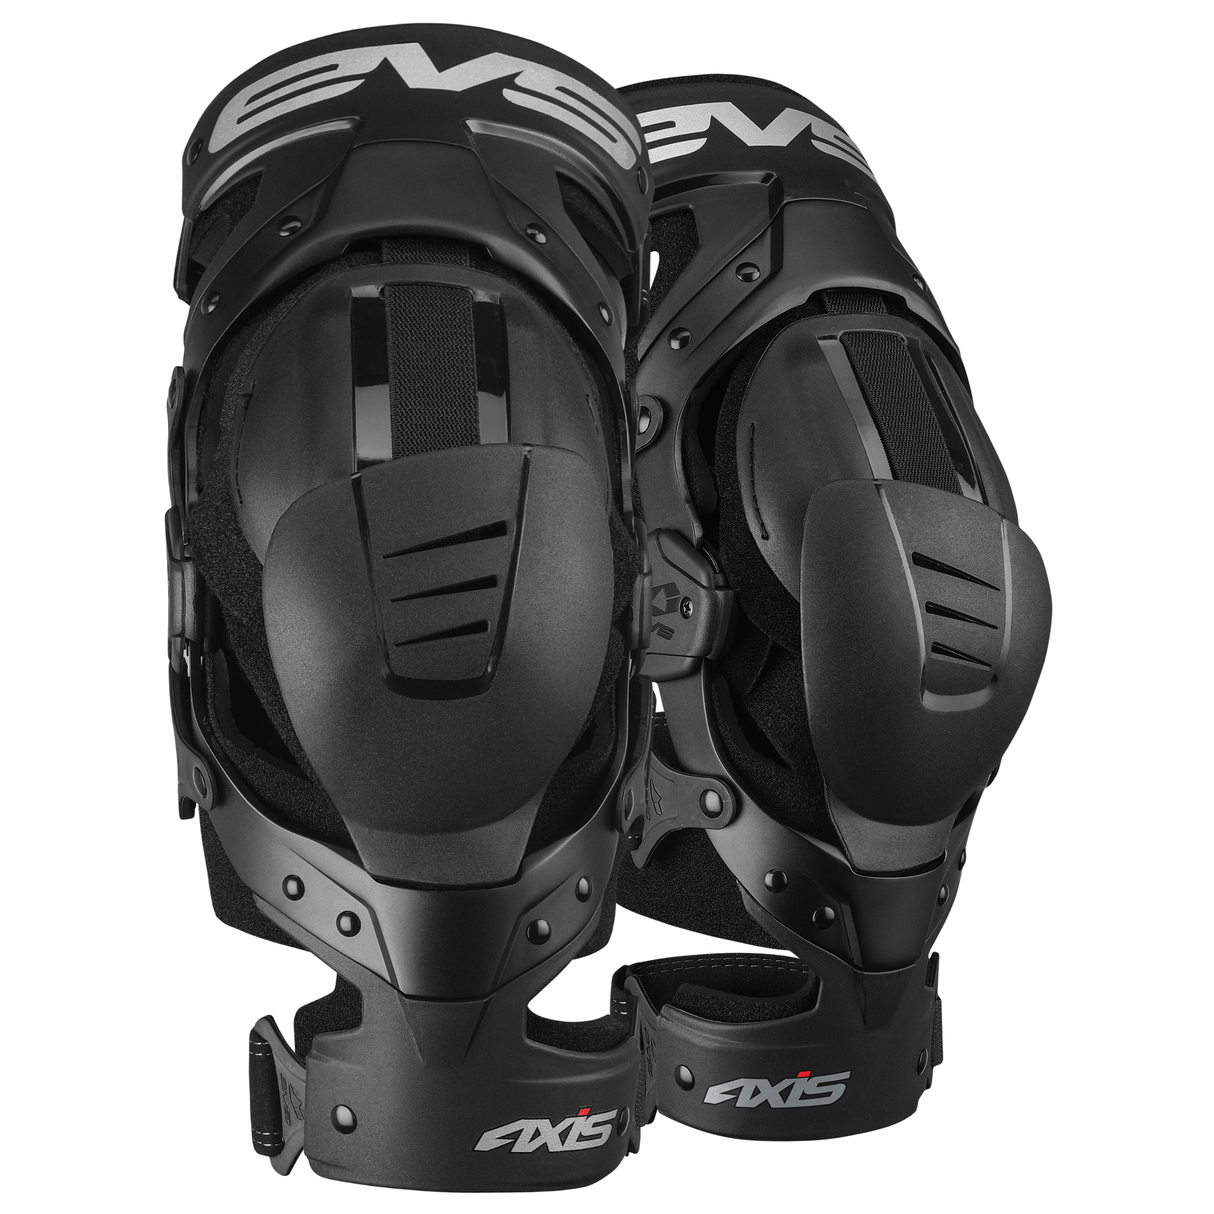 EVS Axis Sport Knee Brace - Pair - Black